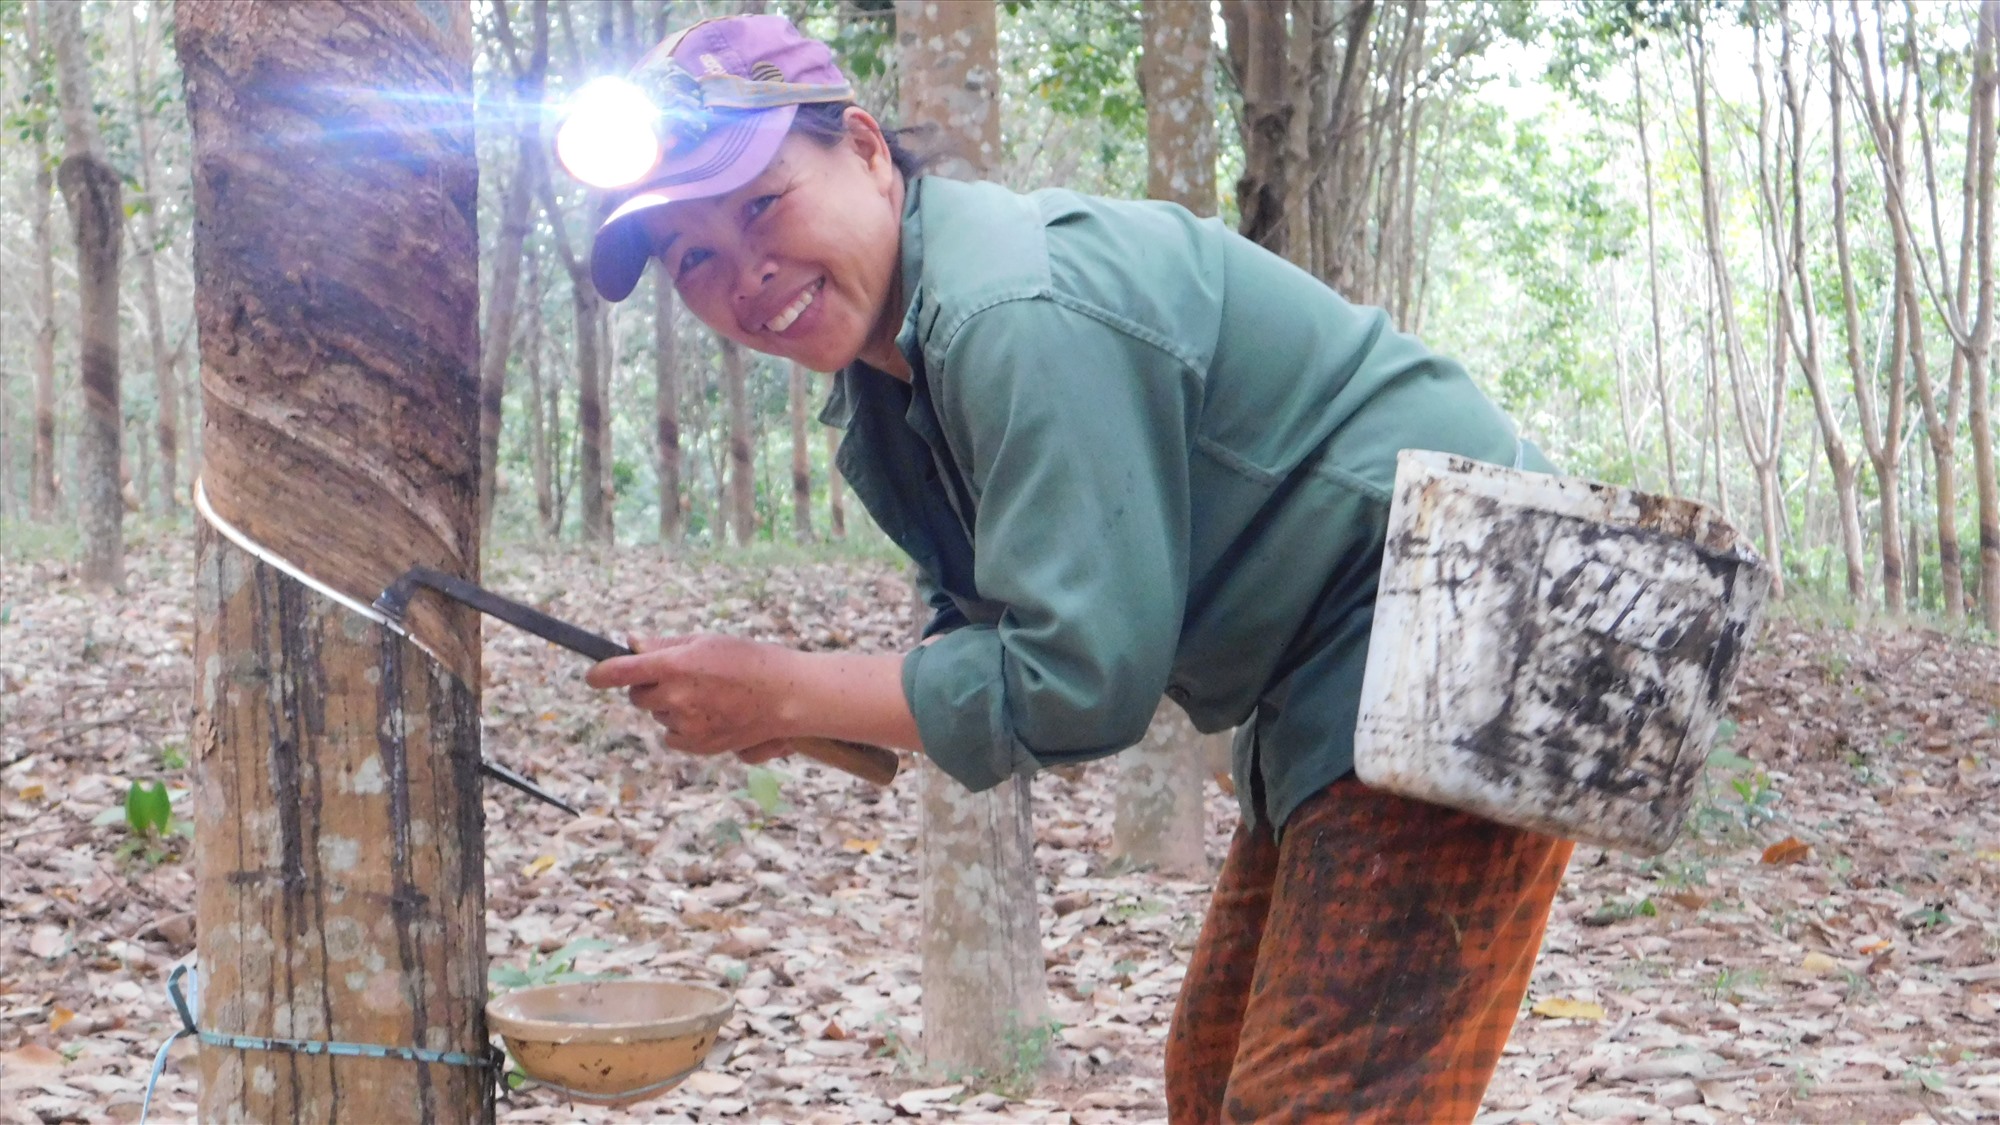 Với vườn cây cao su 400 cây đã cho khai thác, giờ đây chị Hoàng Thị Thắng (thôn Đâu Bình, xã Cam Tuyền, huyện Cam Lộ, tỉnh Quảng Trị) đã có thu nhập ổn định hơn.